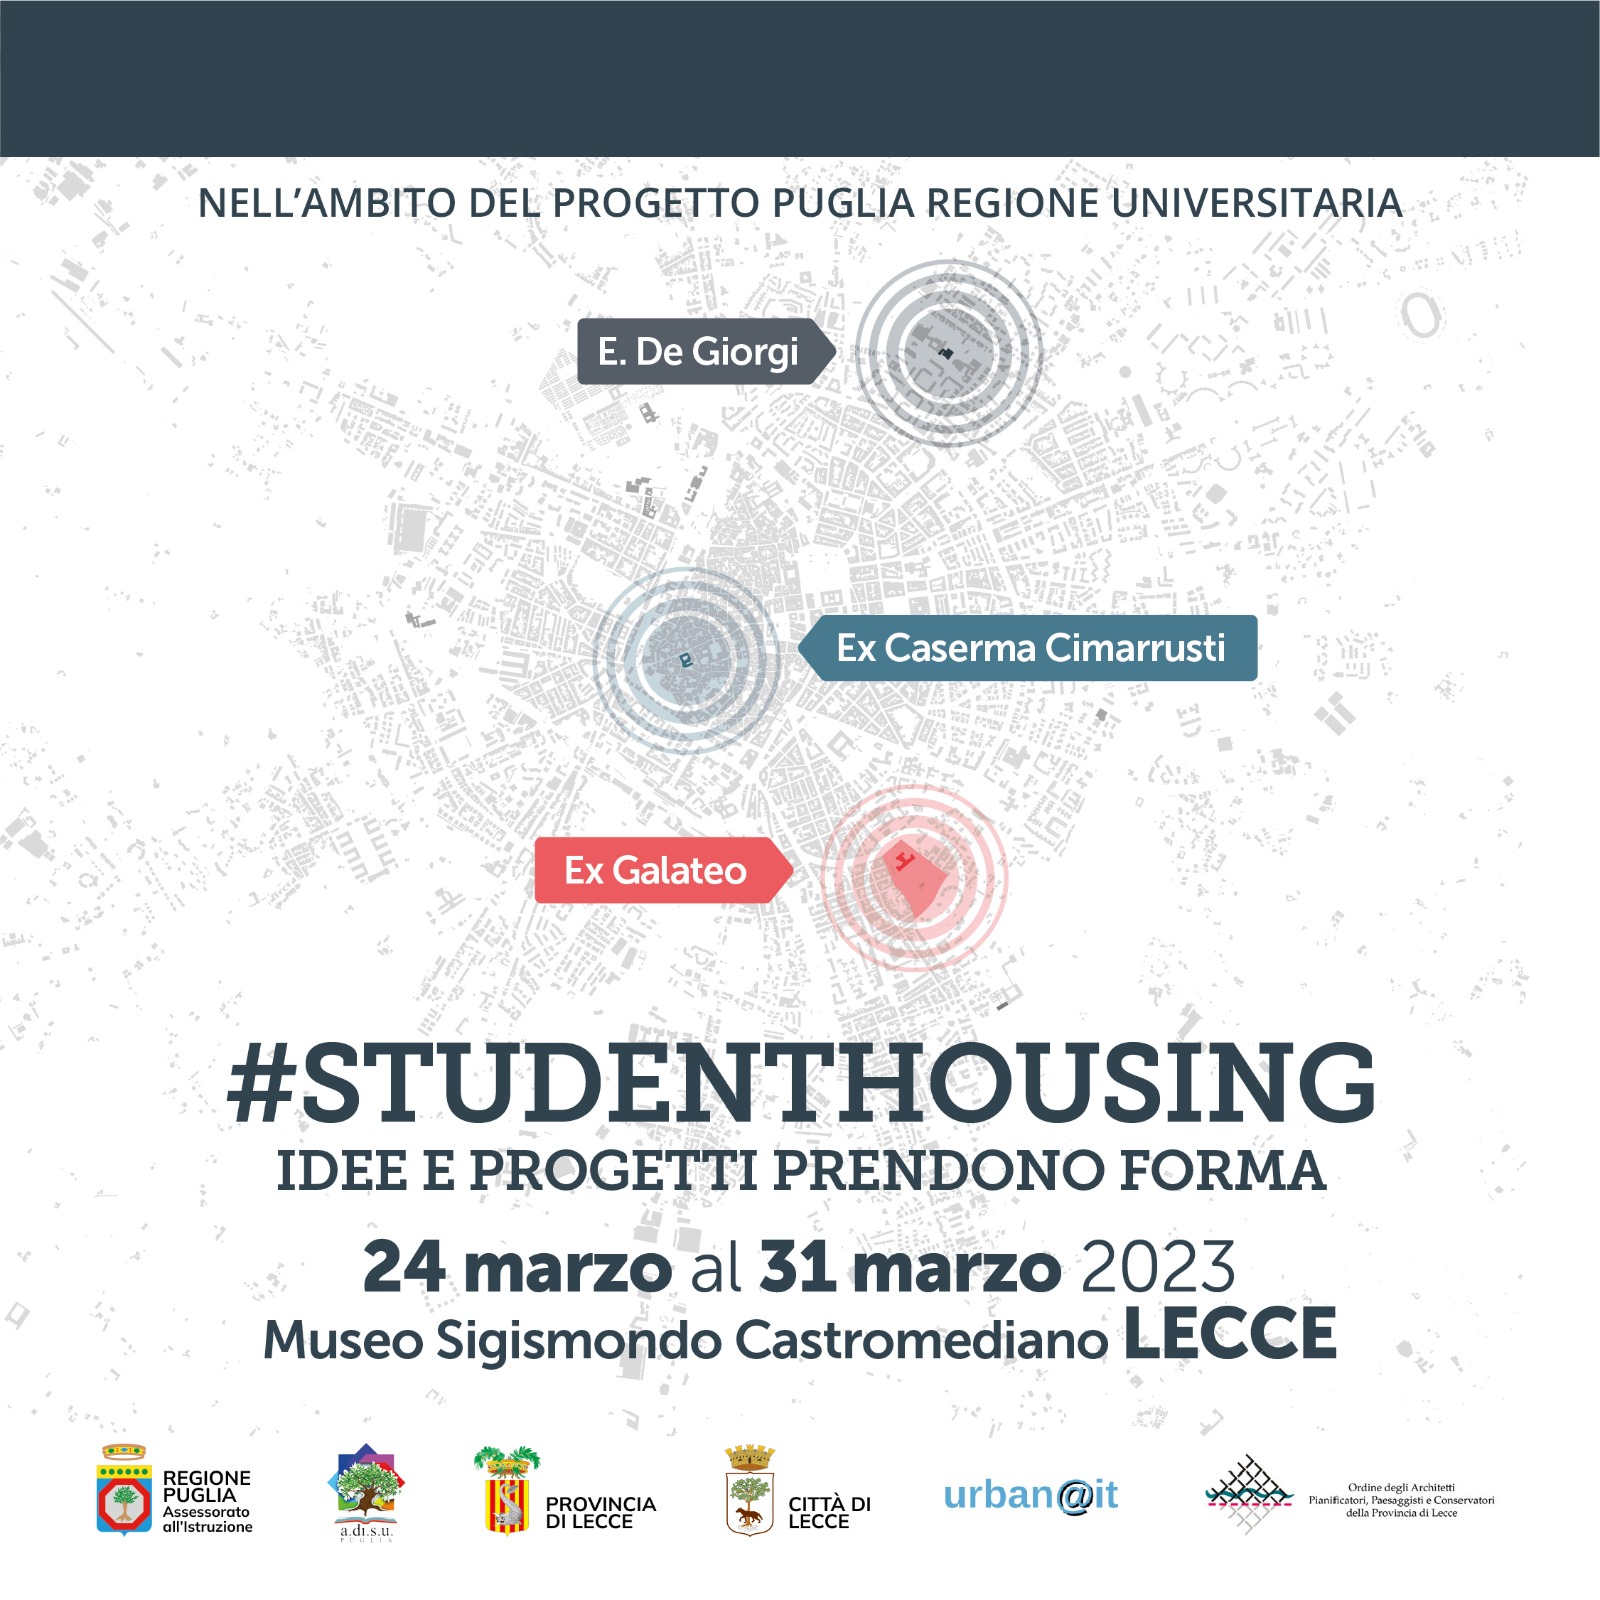 Galleria Lecce Città Universitaria, l’assessore Leo lancia una giornata dedicata all’housing studentesco il 24 marzo - Diapositiva 2 di 2